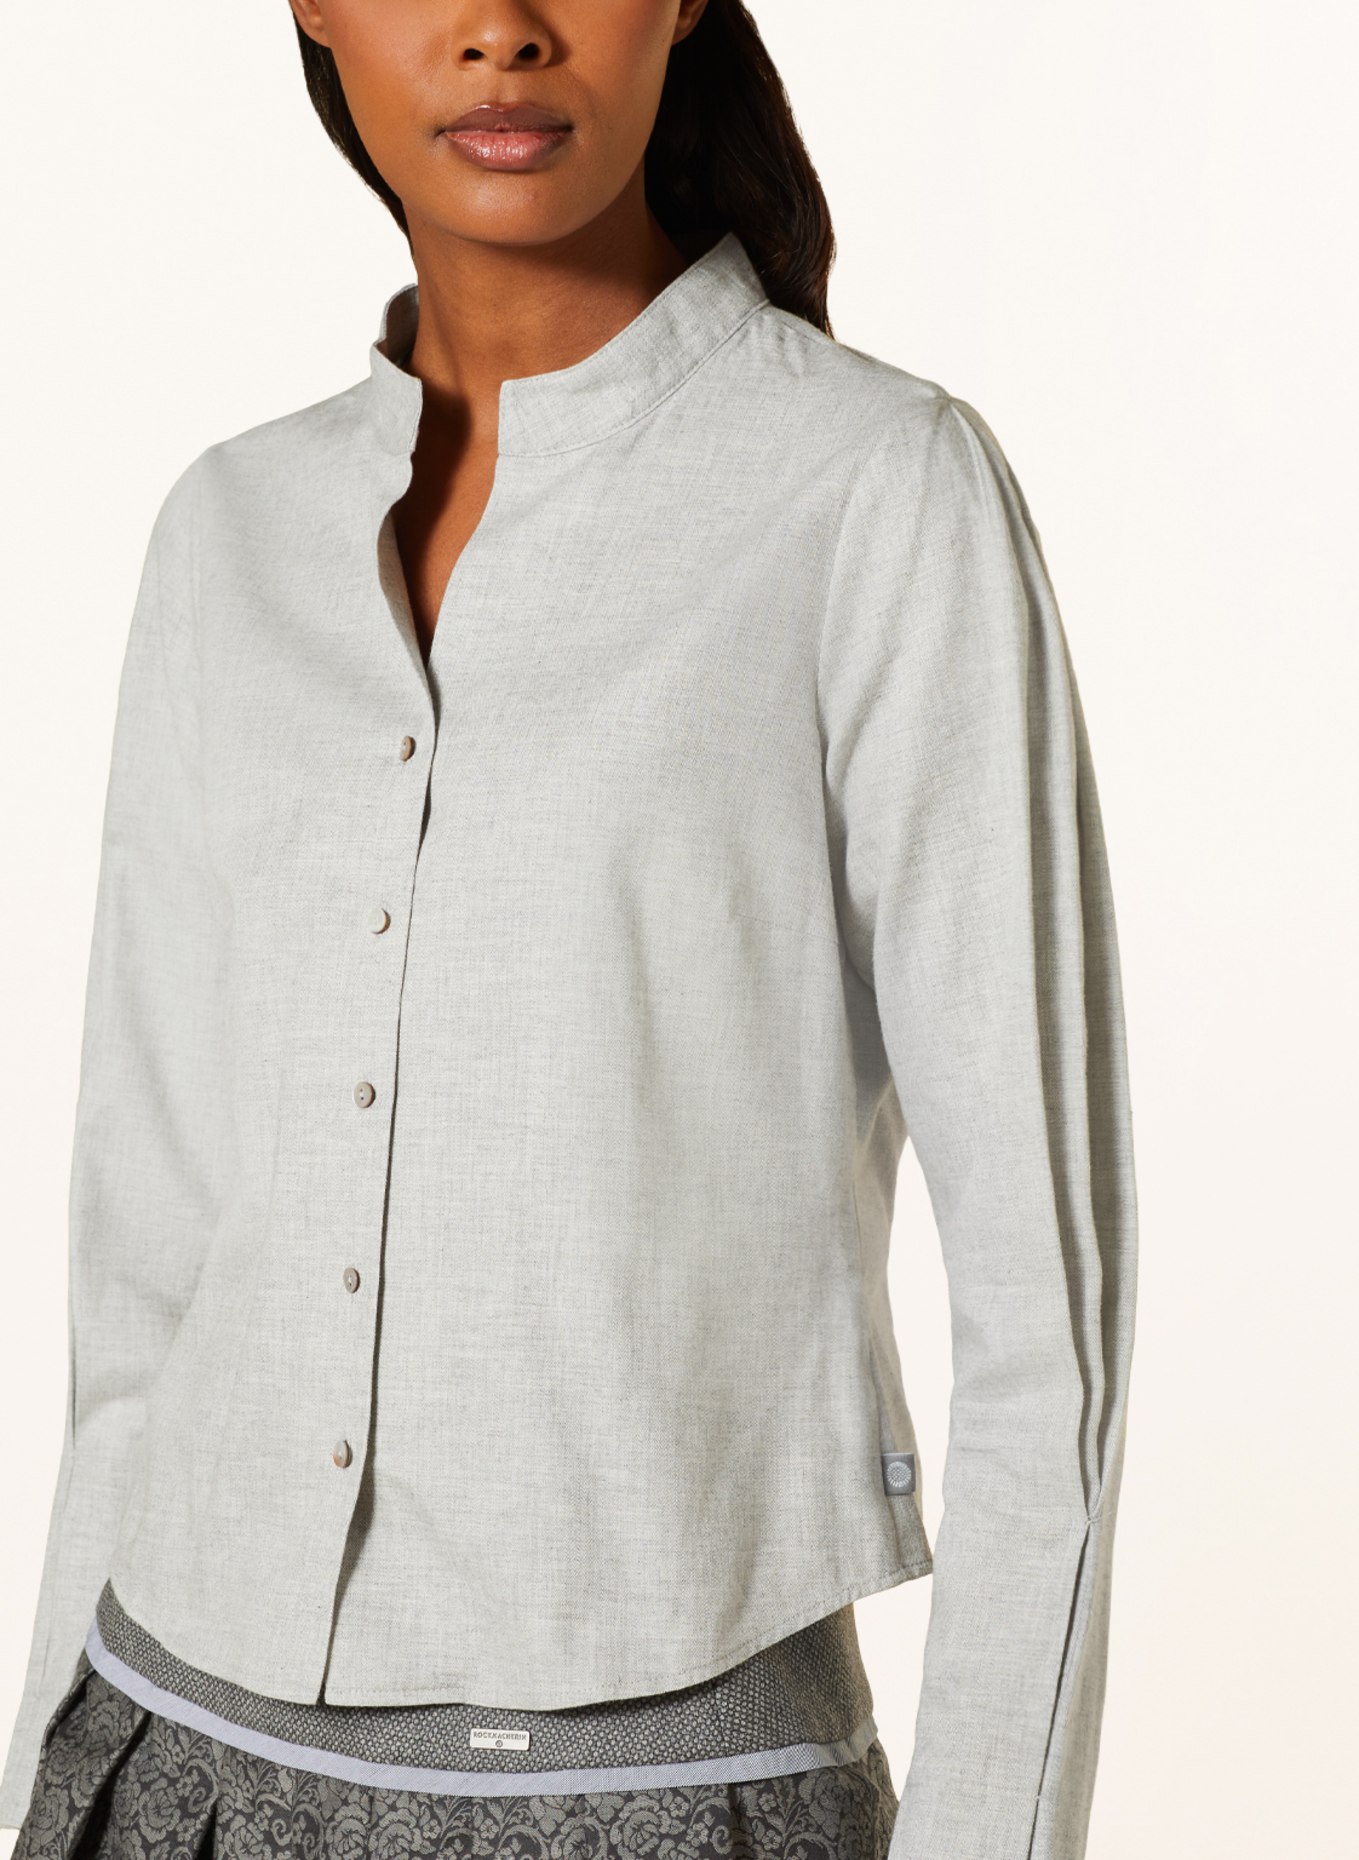 ROCKMACHERIN Trachten blouse NORA, Color: GRAY (Image 4)